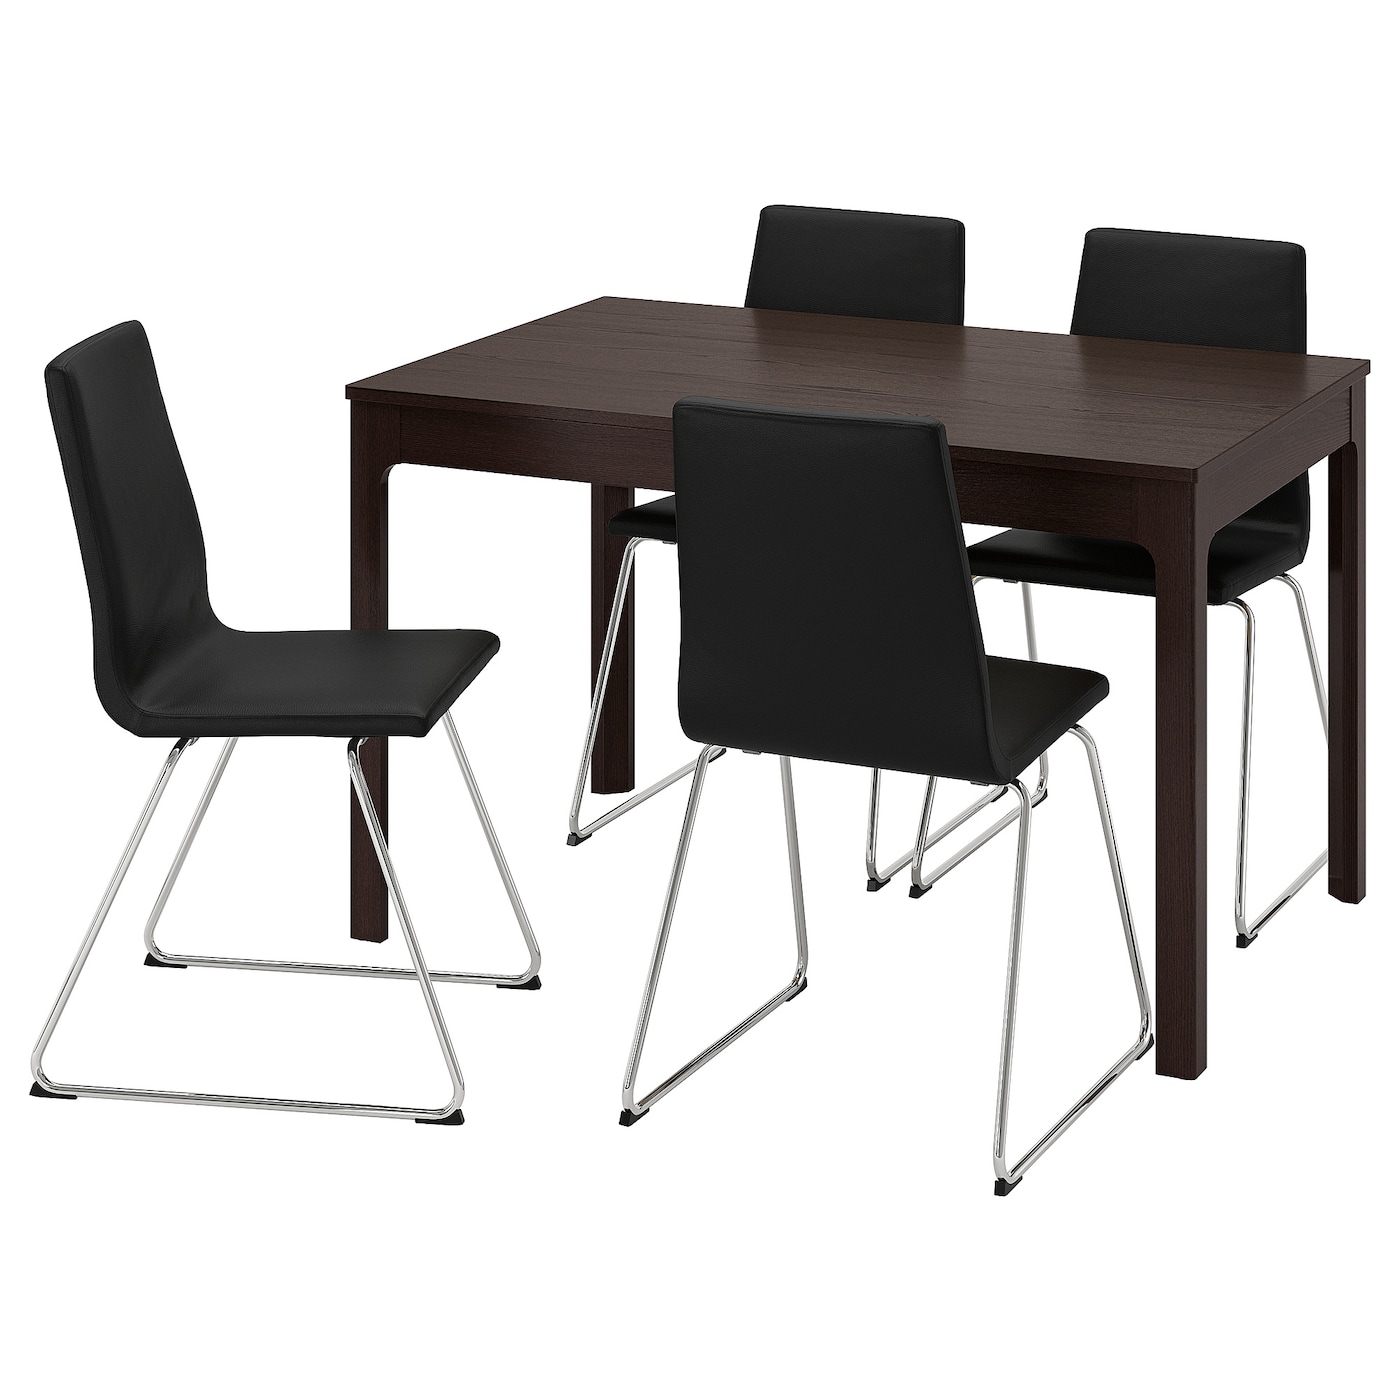 Стол и 4 стула - IKEA EKEDALEN/LILLÅNÄS/LILLANAS/ЭКЕДАЛЕН/ЛИЛЛОНЭС, 120/180х80 см, темно-коричневый/черный